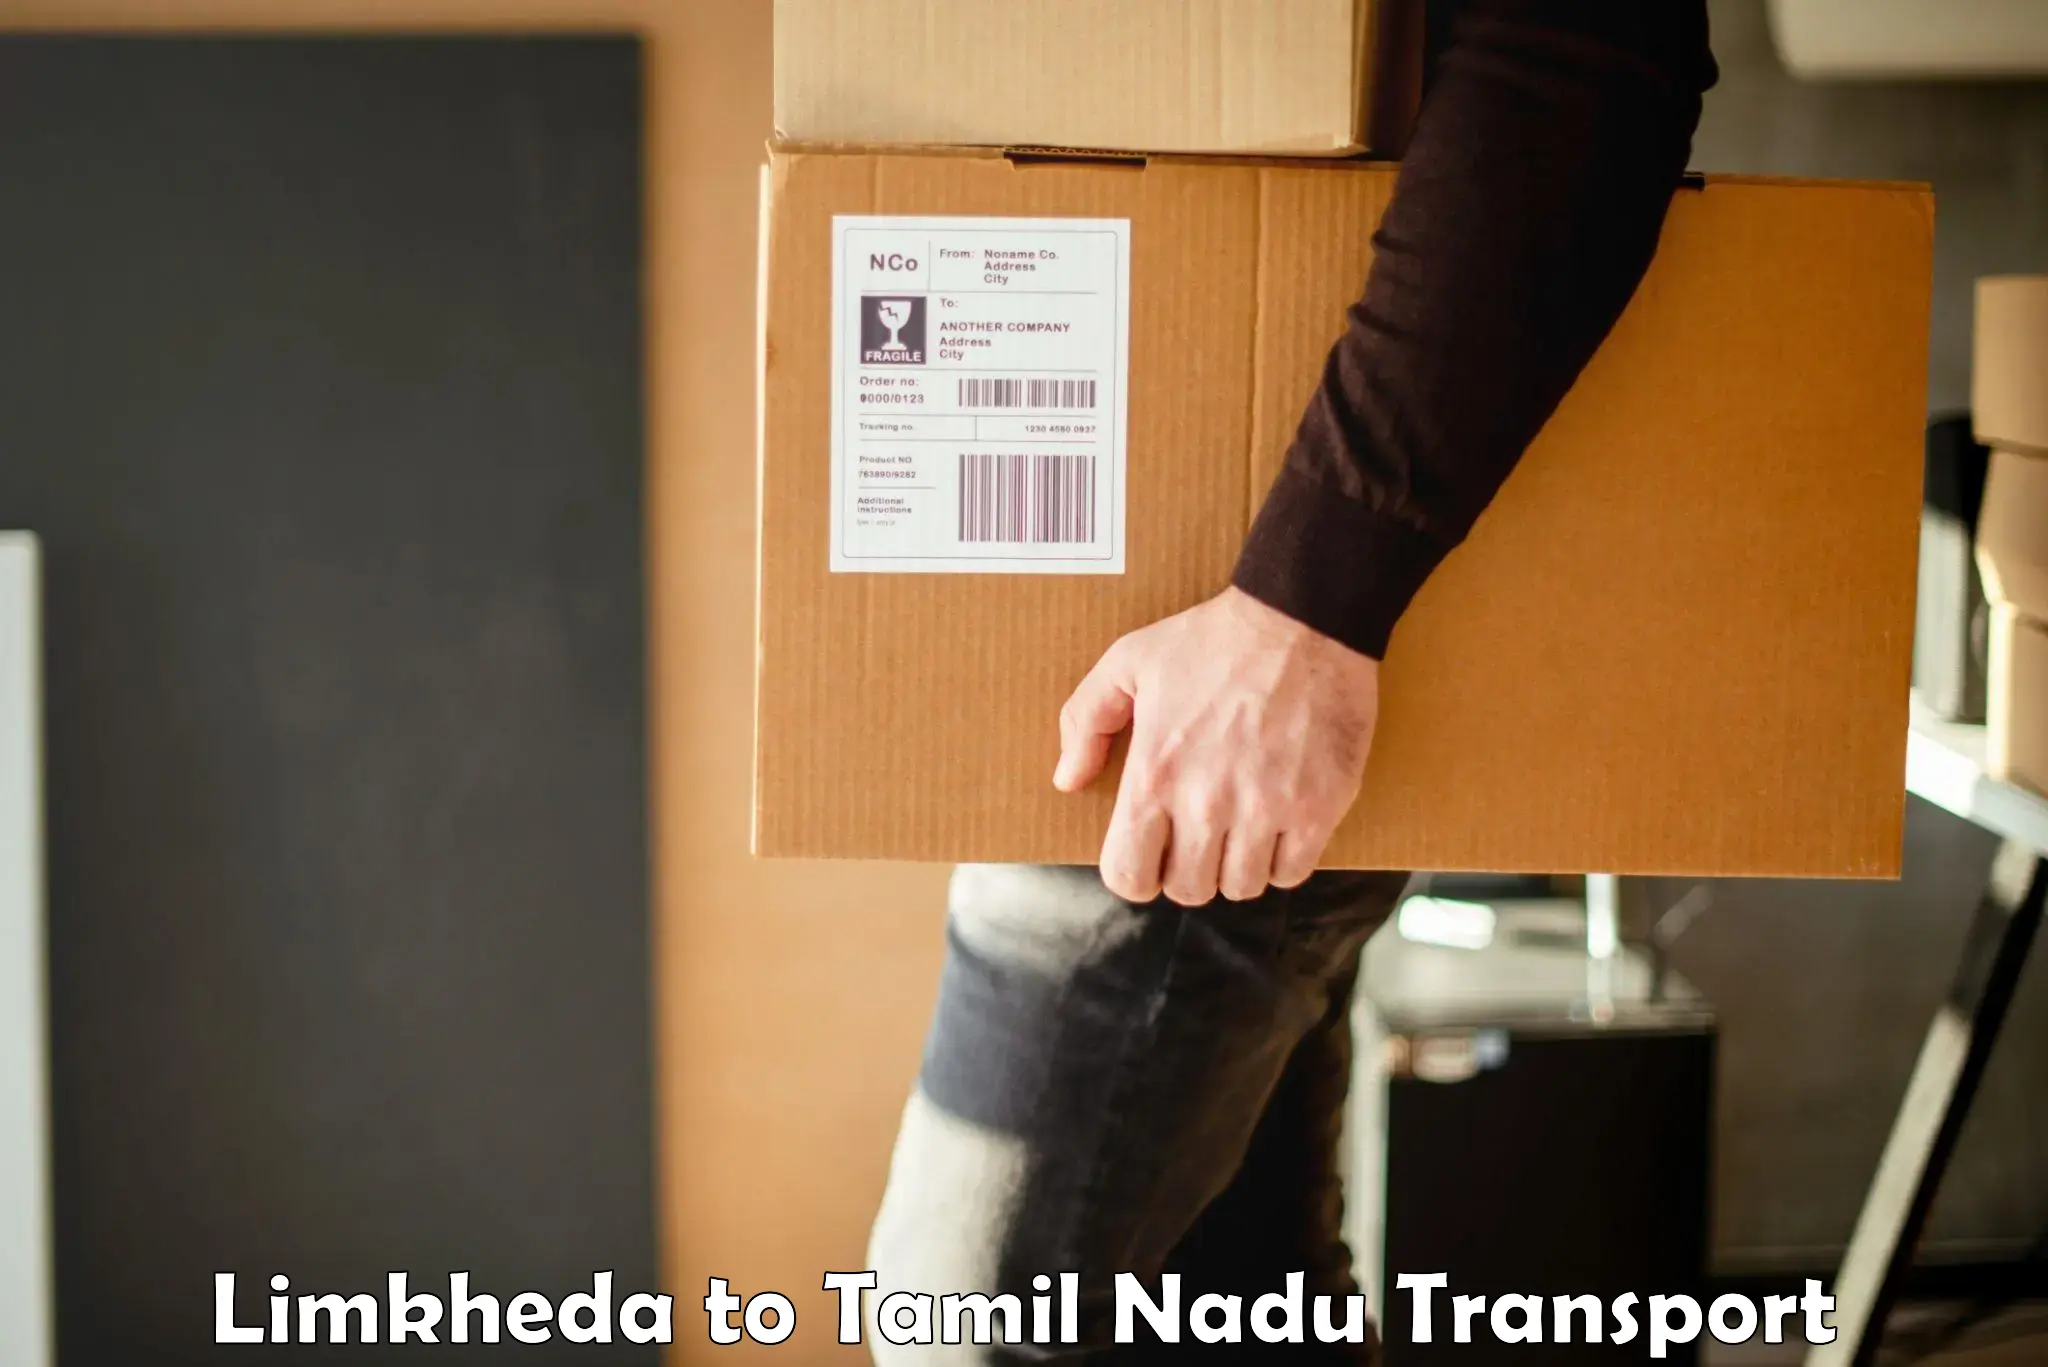 Road transport online services Limkheda to Tiruvarur